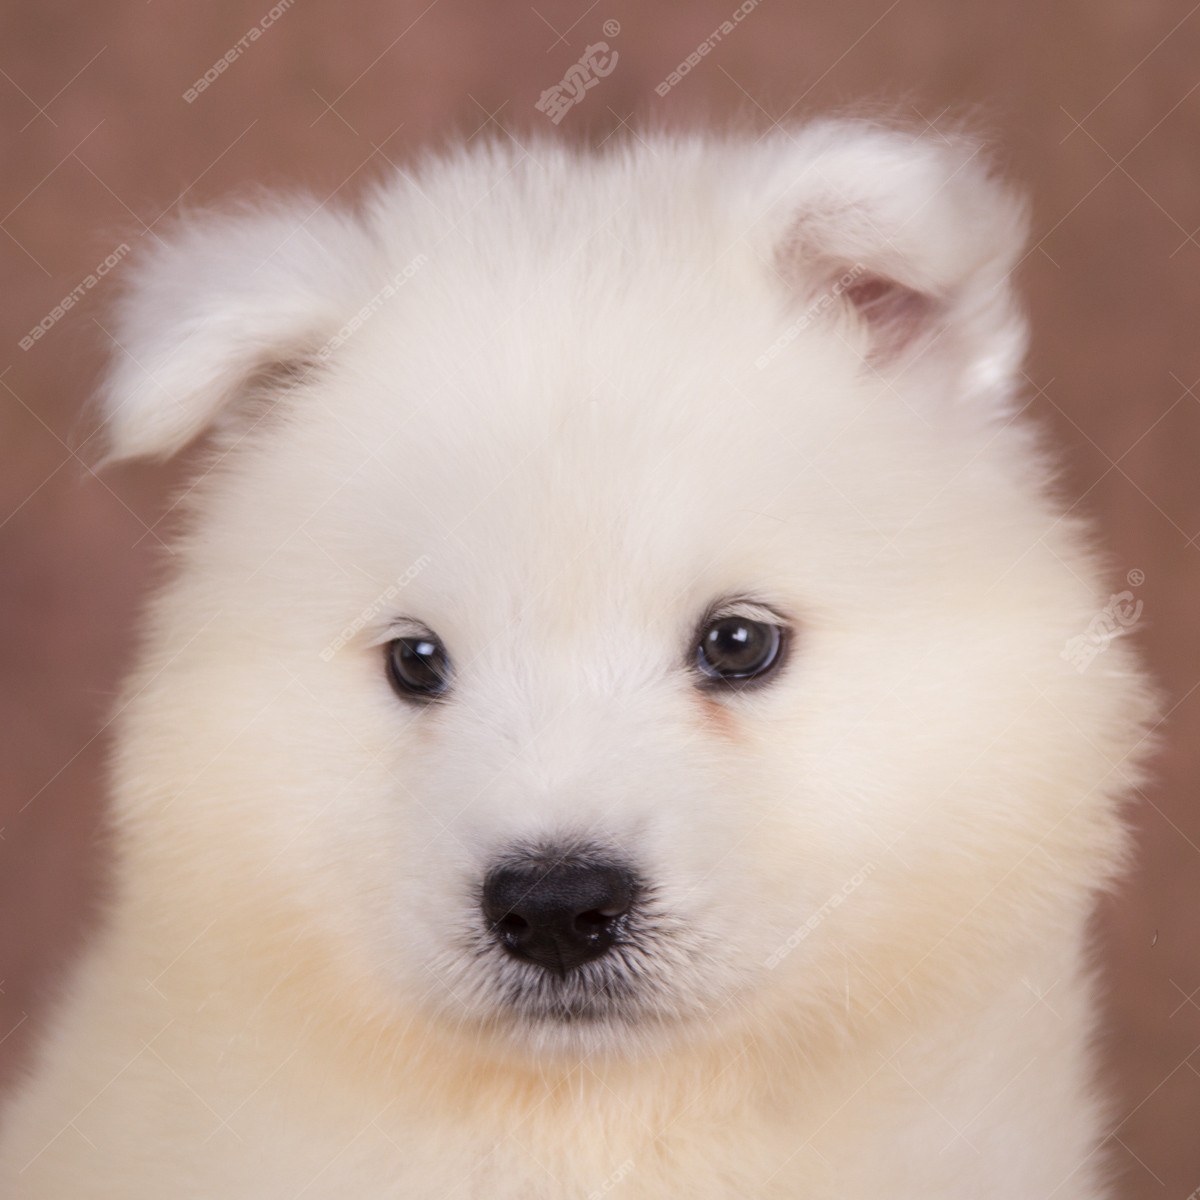 纯种萨摩耶犬幼犬狗狗出售 宠物萨摩耶犬可支付宝交易 萨摩耶犬 /编号10109203 - 宝贝它